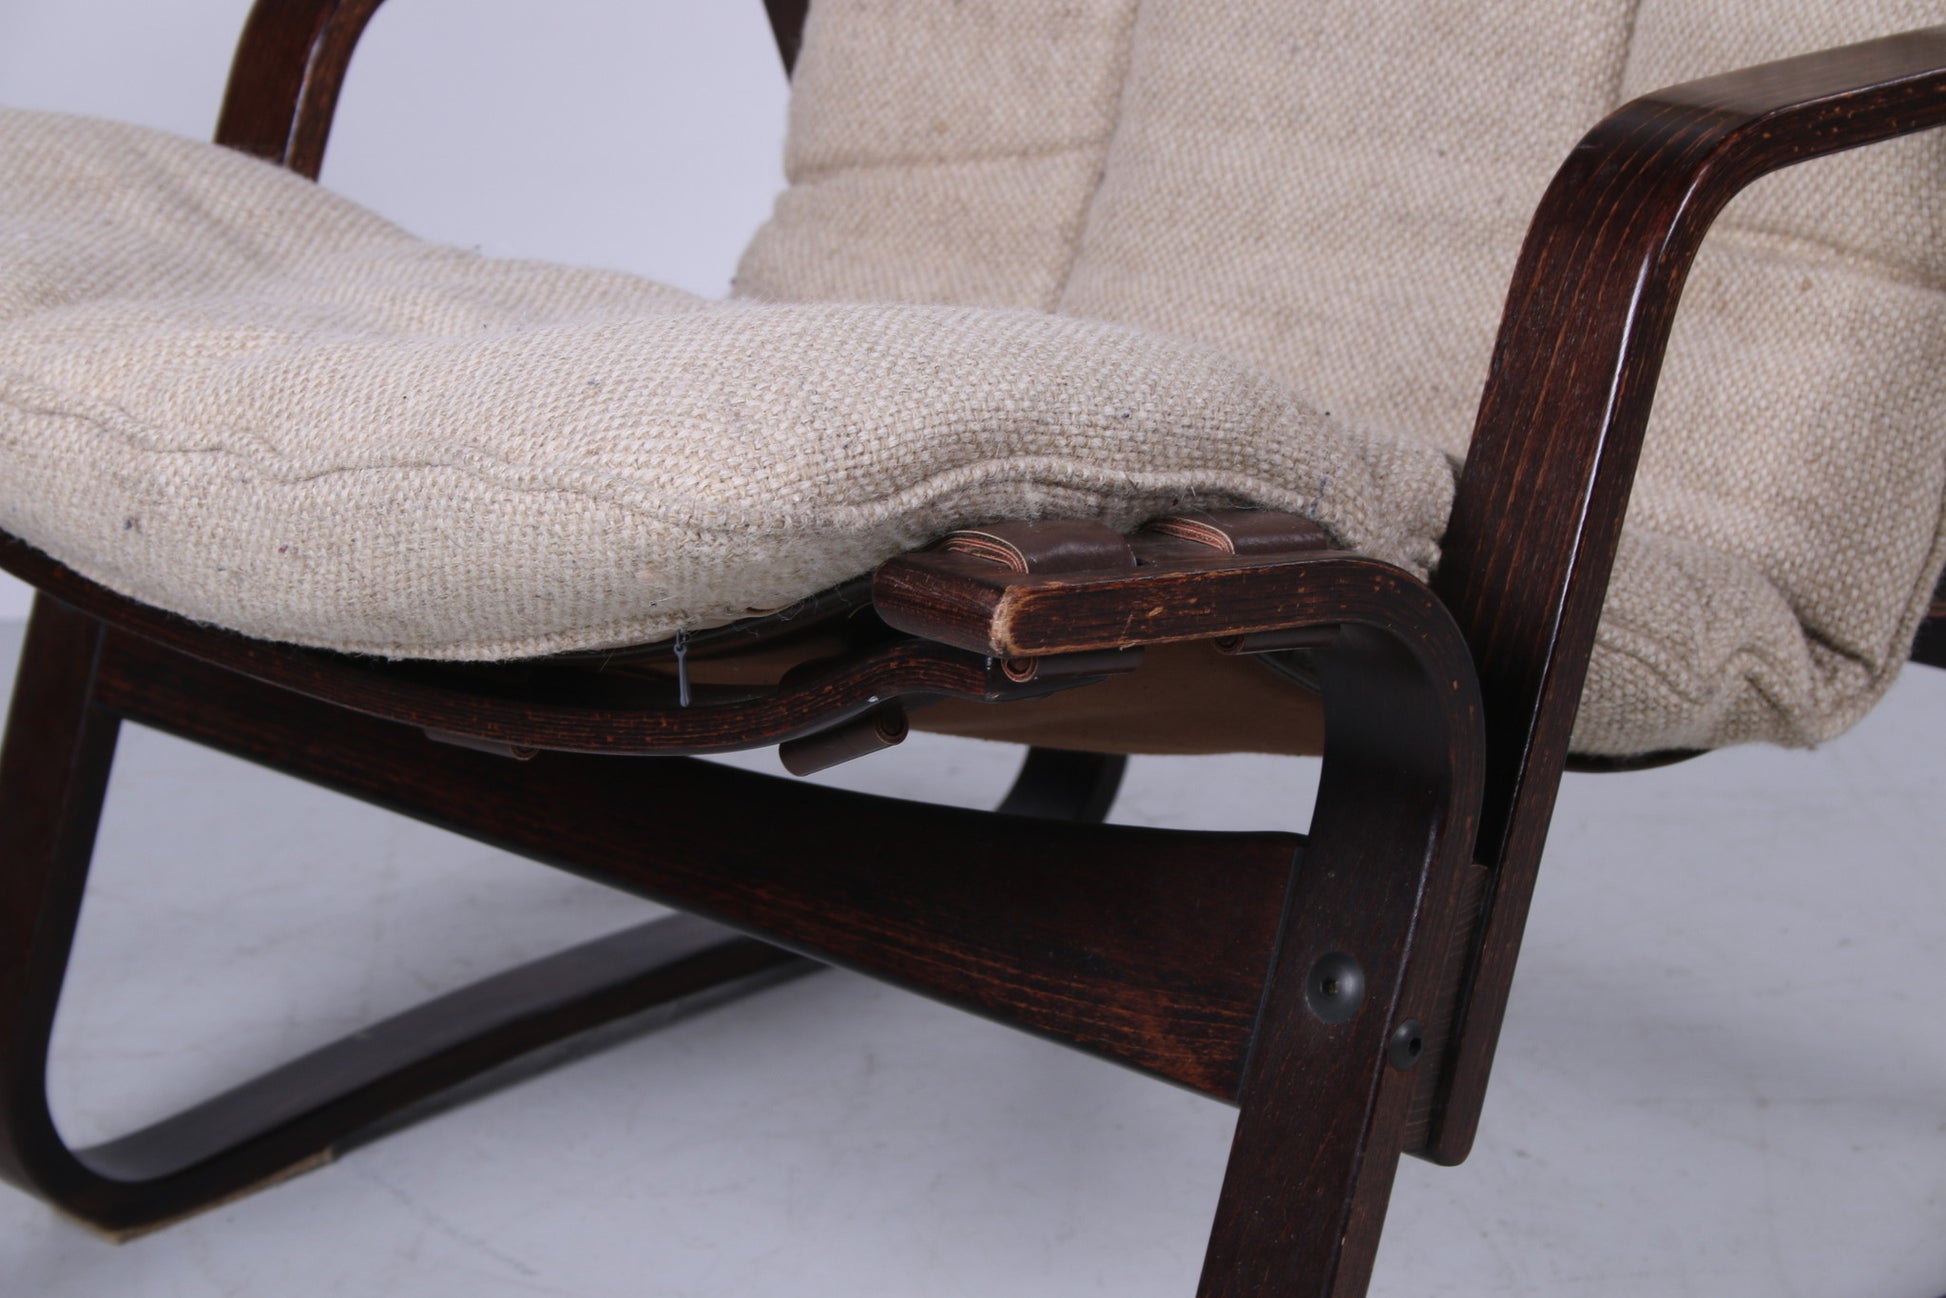 Vintage Duitse fauteuil jute bekleding, jaren 60 detail houten rand zijkant